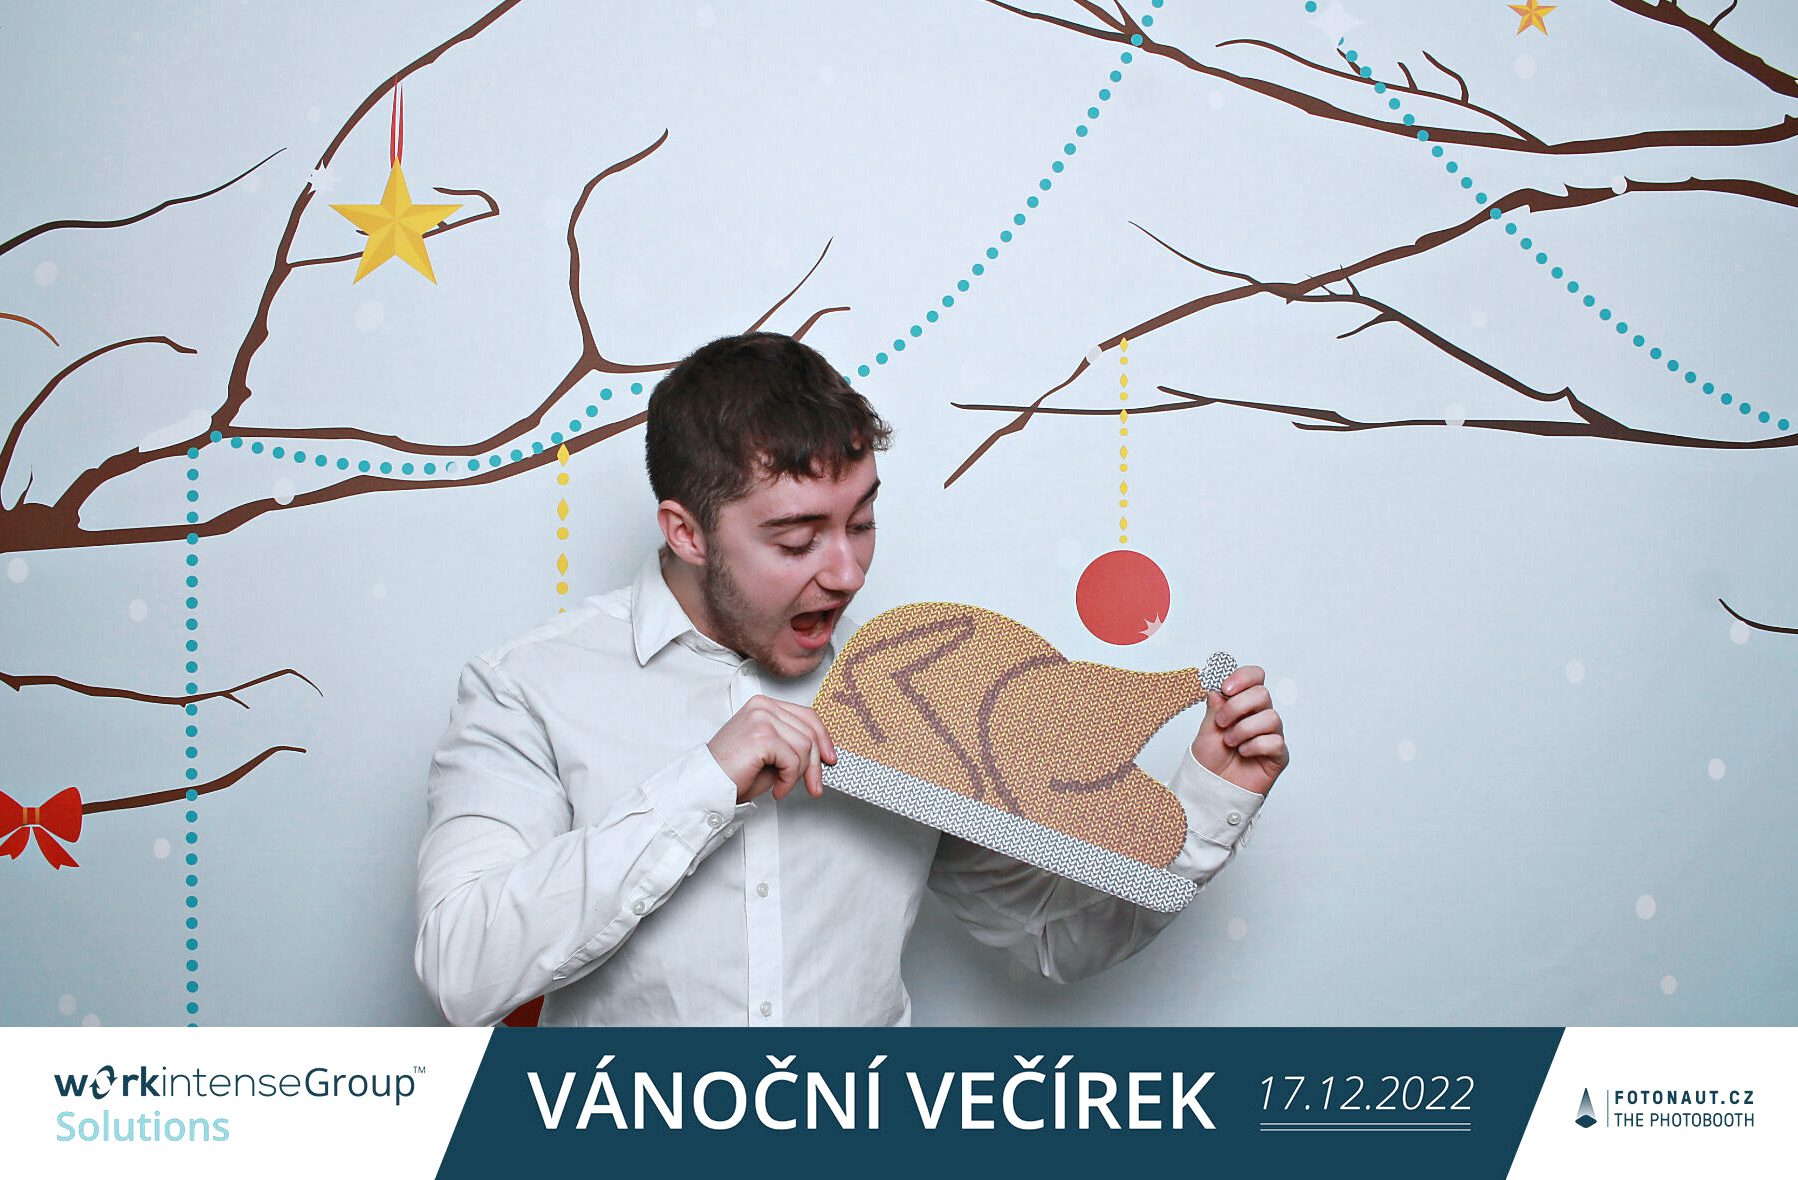 fotokoutek-firemni-vecirek-vanocni-vecirek-workintensegroup-solutions-vanocni-vecirek-17-12-2022-820451